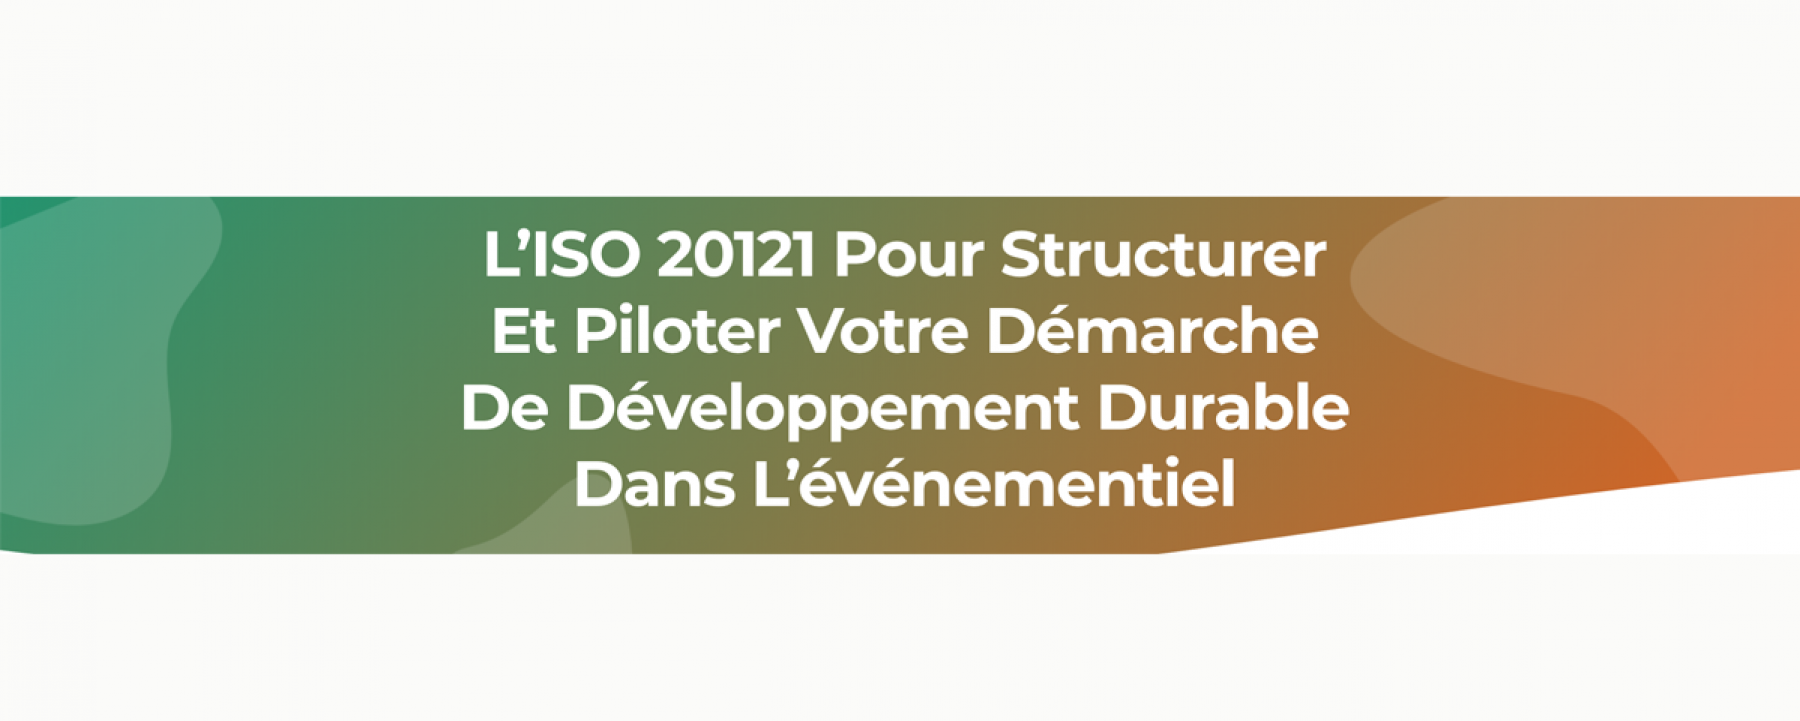 Webinar L'ISO 20121 pour structurer et piloter votre démarche de développement durable dans l'événementiel, organisé par Green Evenement, le 25 mai 2020